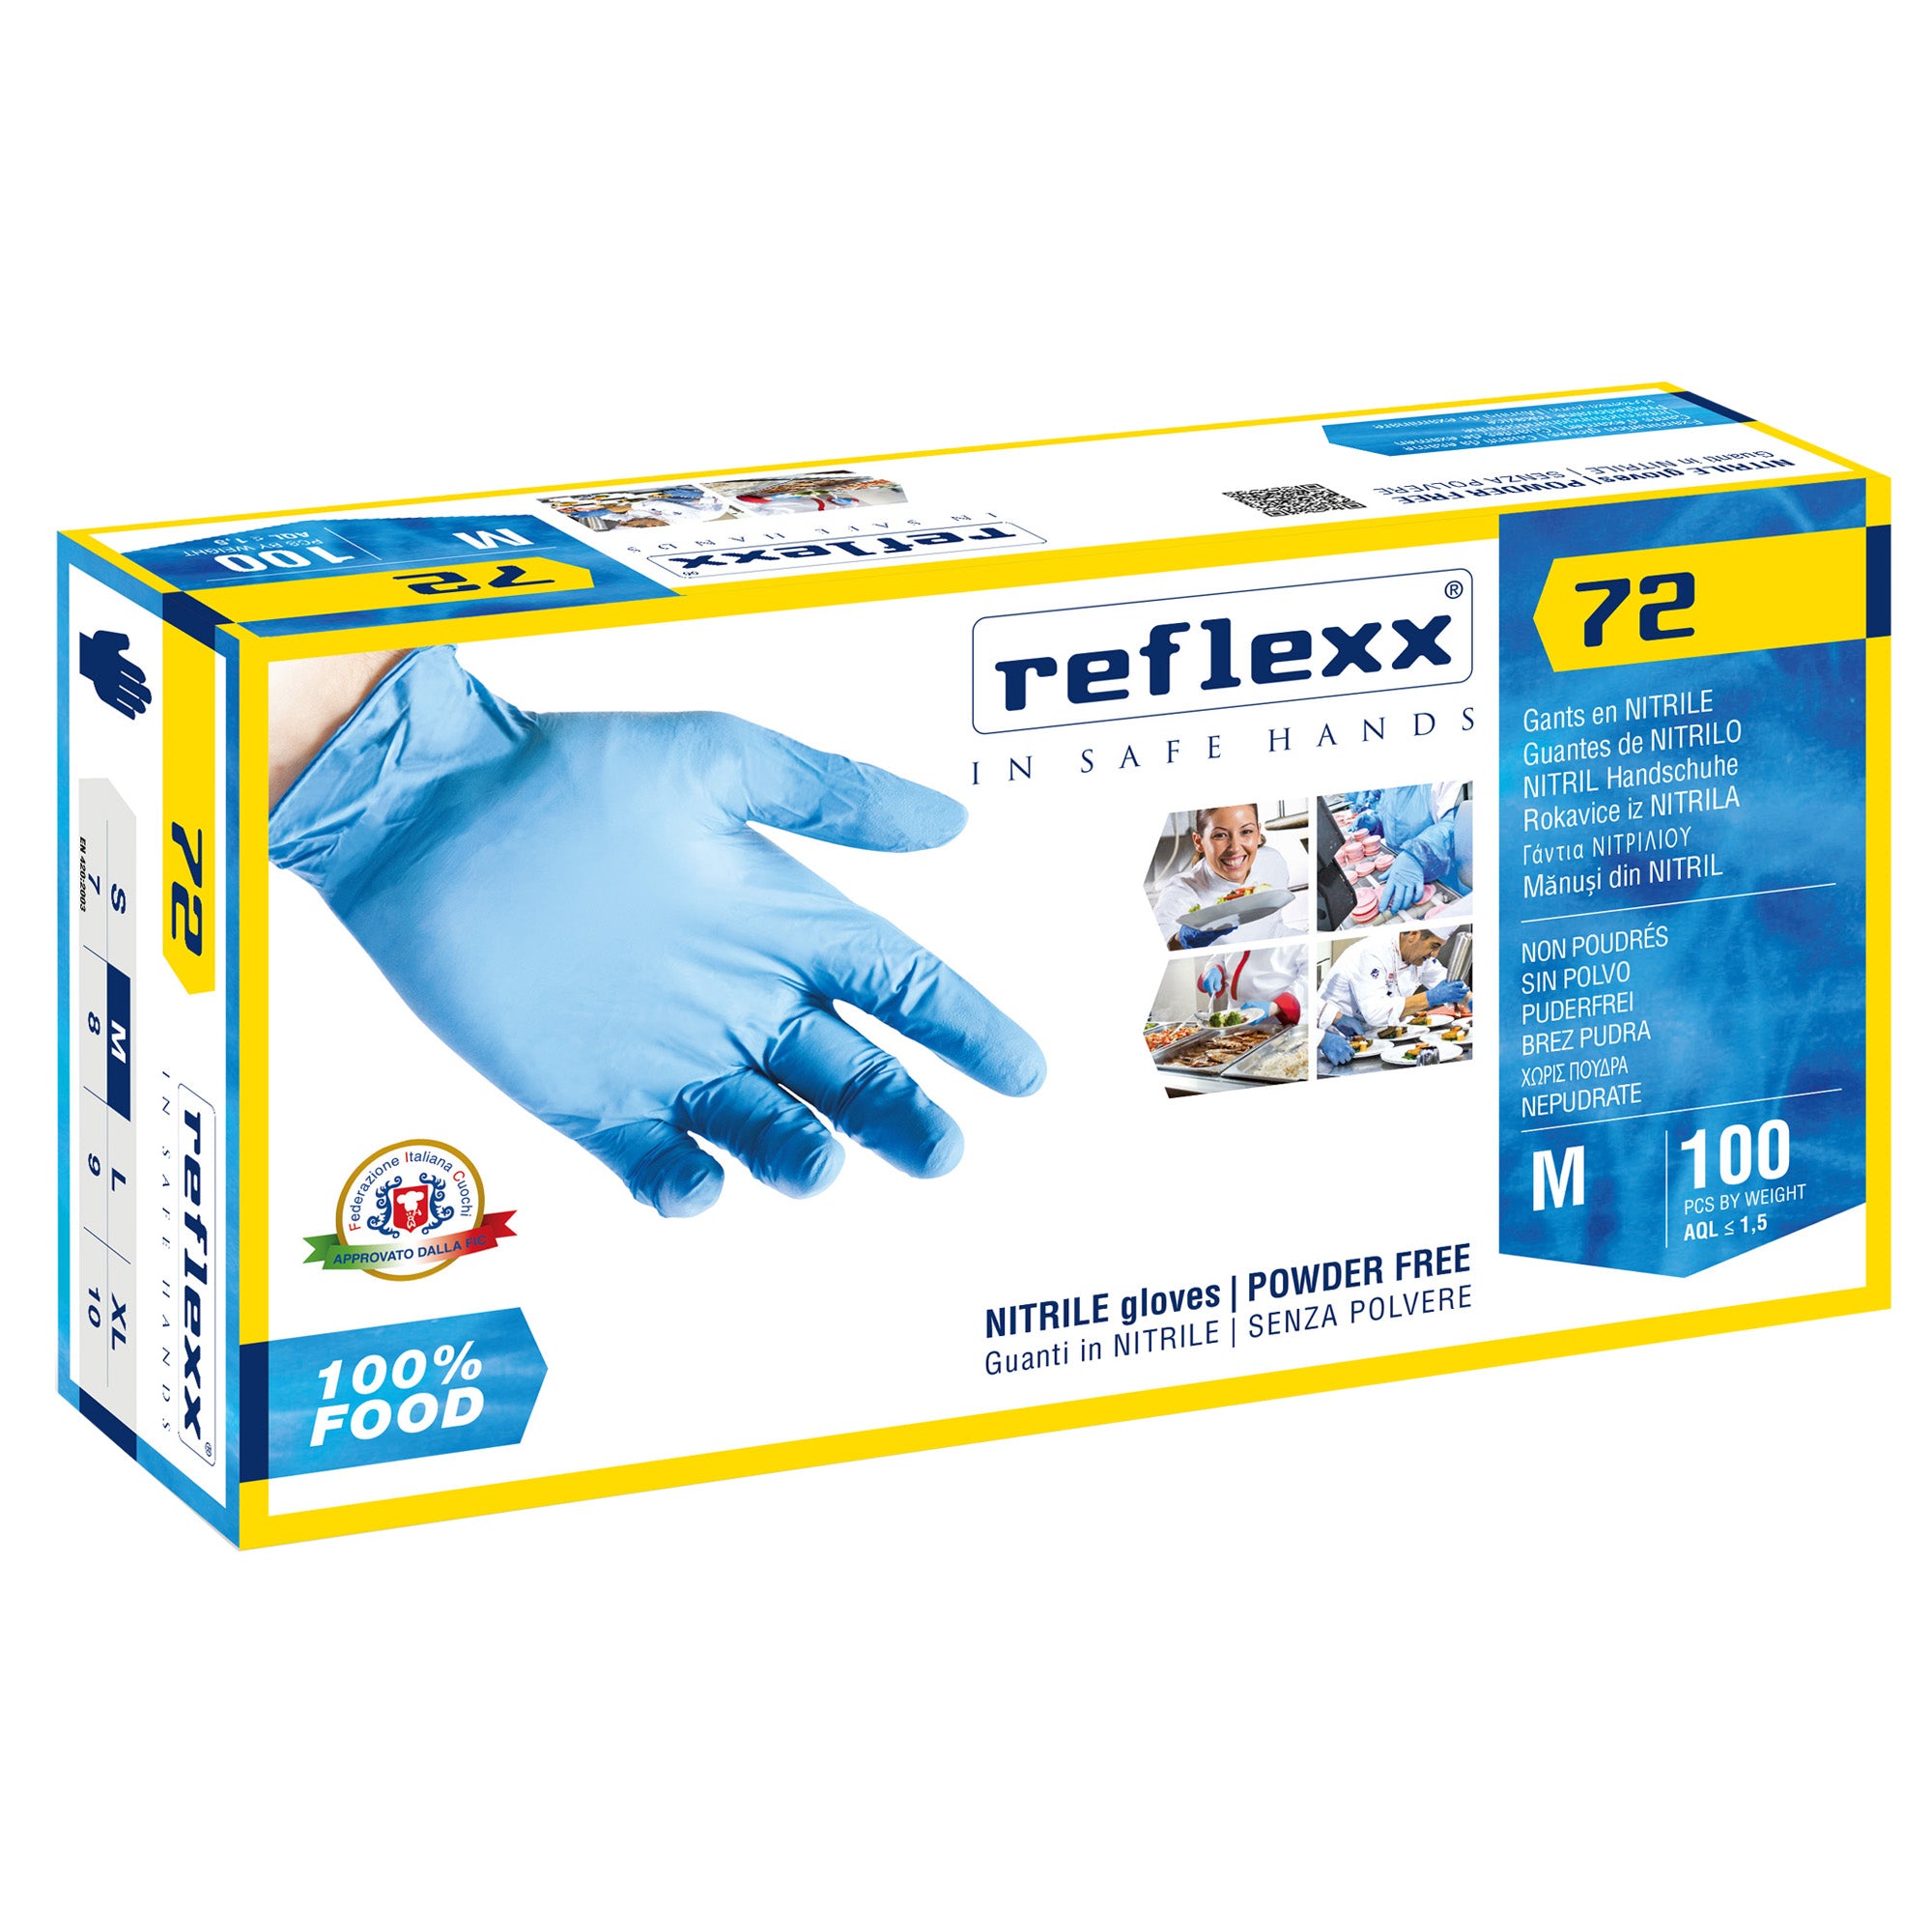 reflexx-conf-100-guanti-nitrile-r72-taglia-m-azzurri-foodline